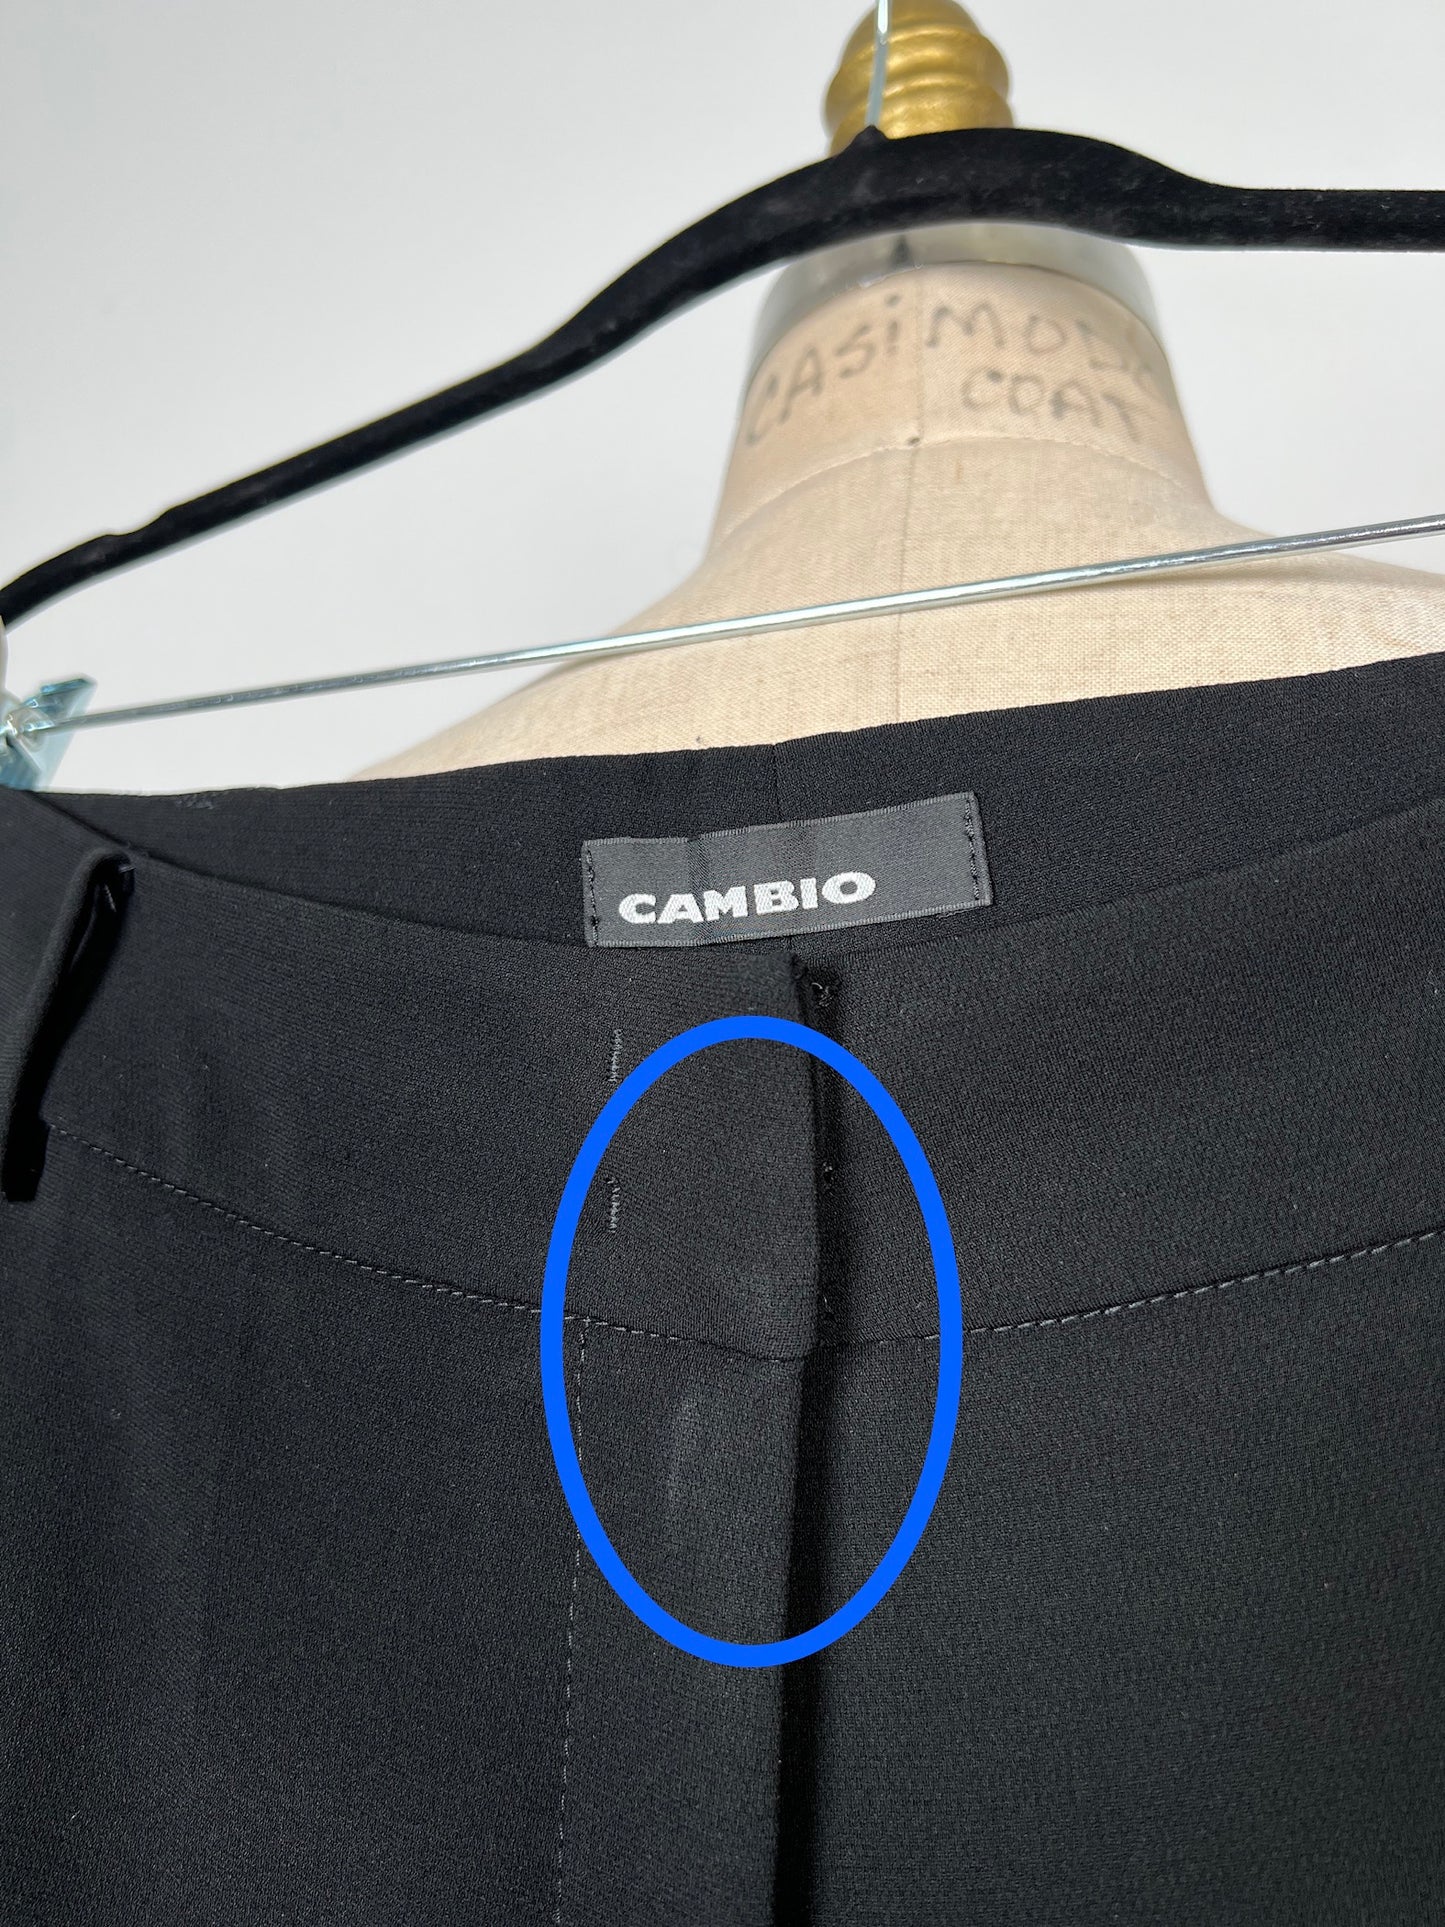 Pantalon hybride tailleur / jogger noir IMP* (6)